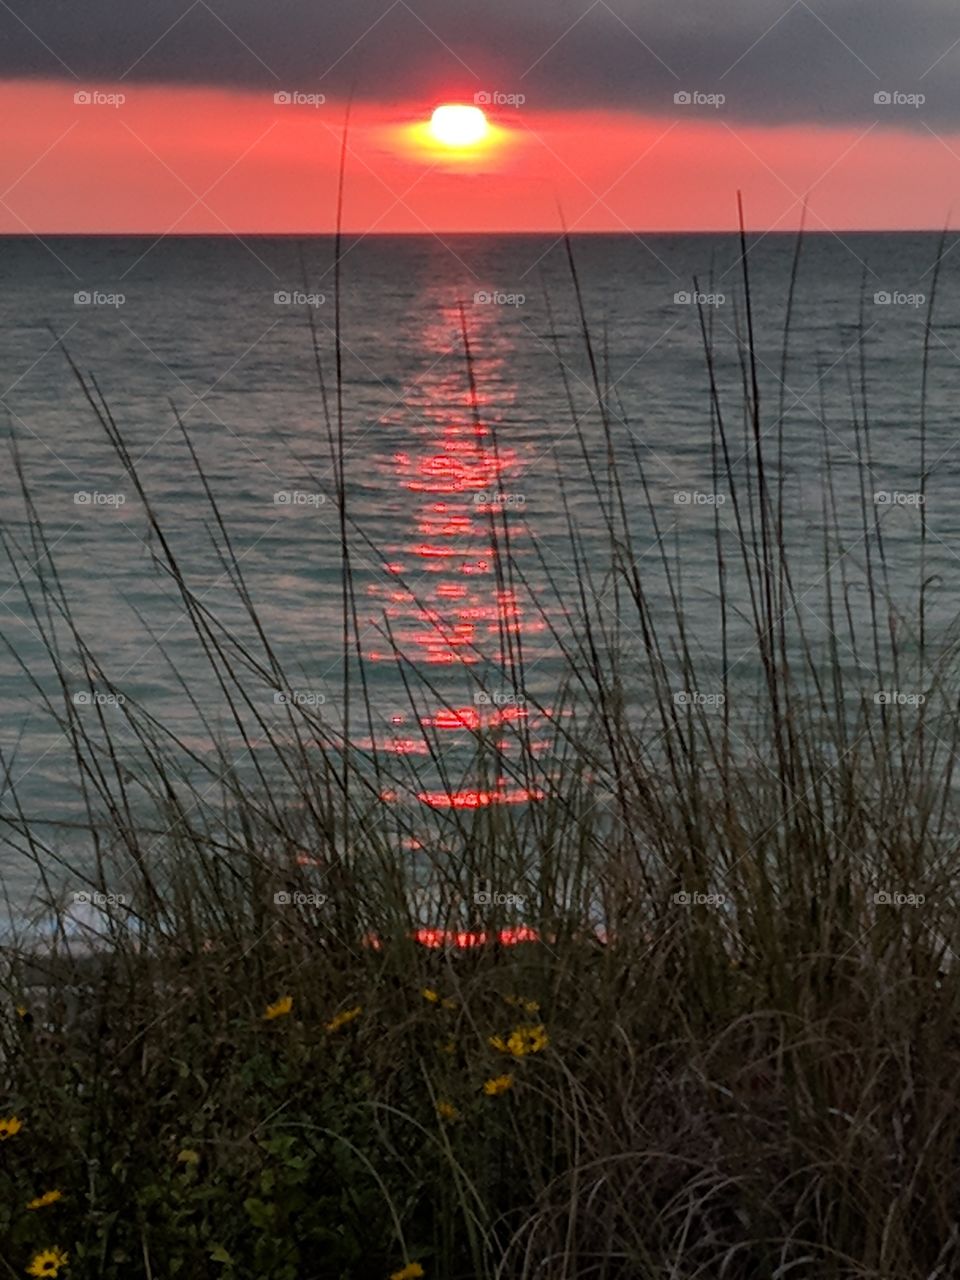 Florida Gulf coast sunset